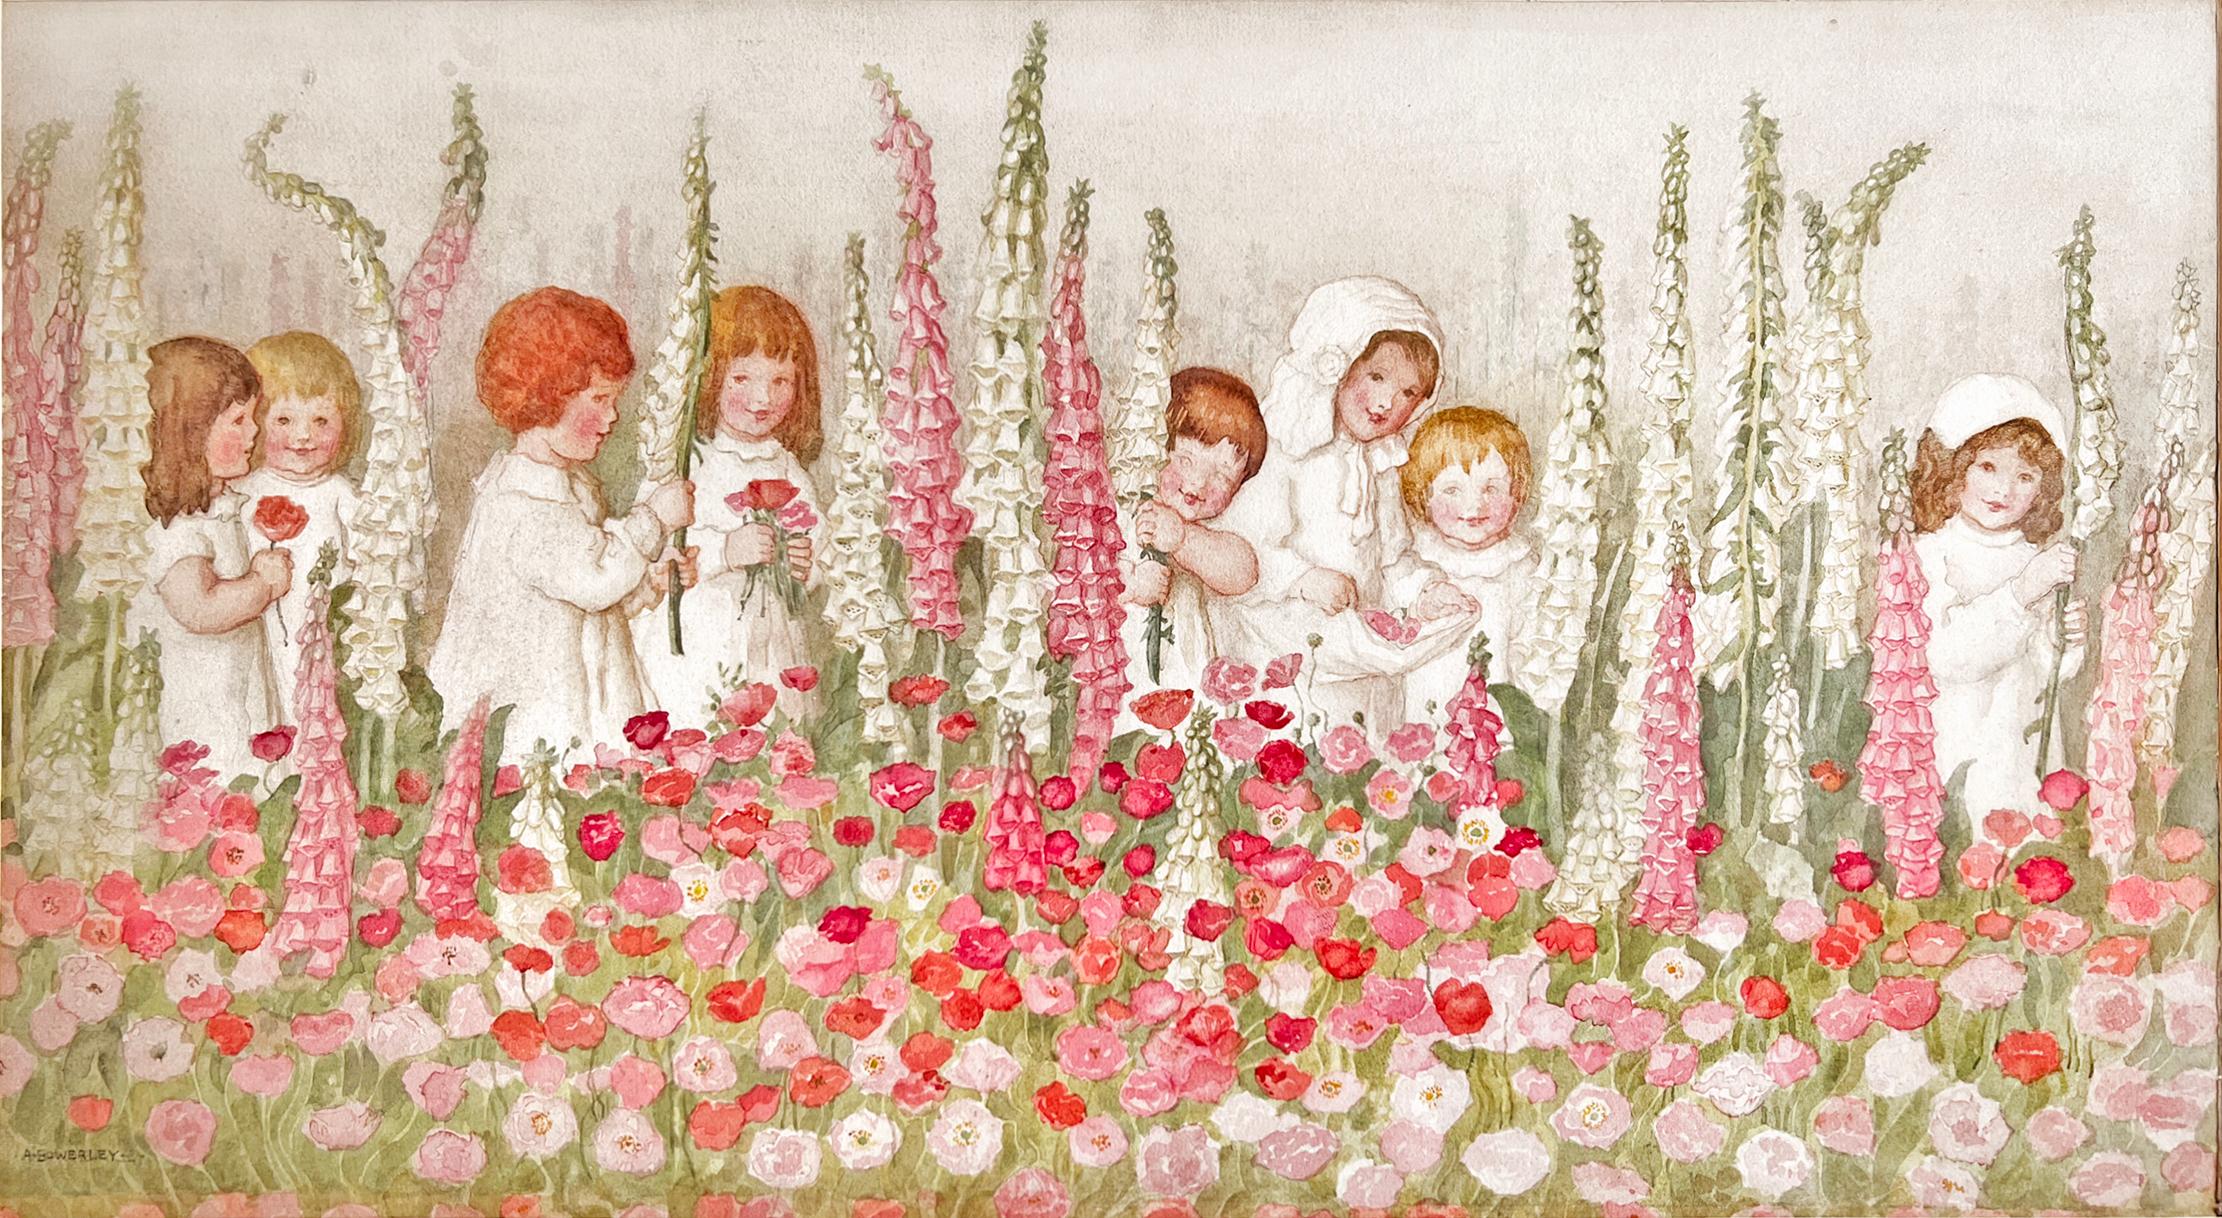 Amelia Bauerle  ( Bowerley )  Landscape Art – Kinder mit Fuchspelzen - Rosa Blumen, weibliche Illustratorin des Goldenen Zeitalters